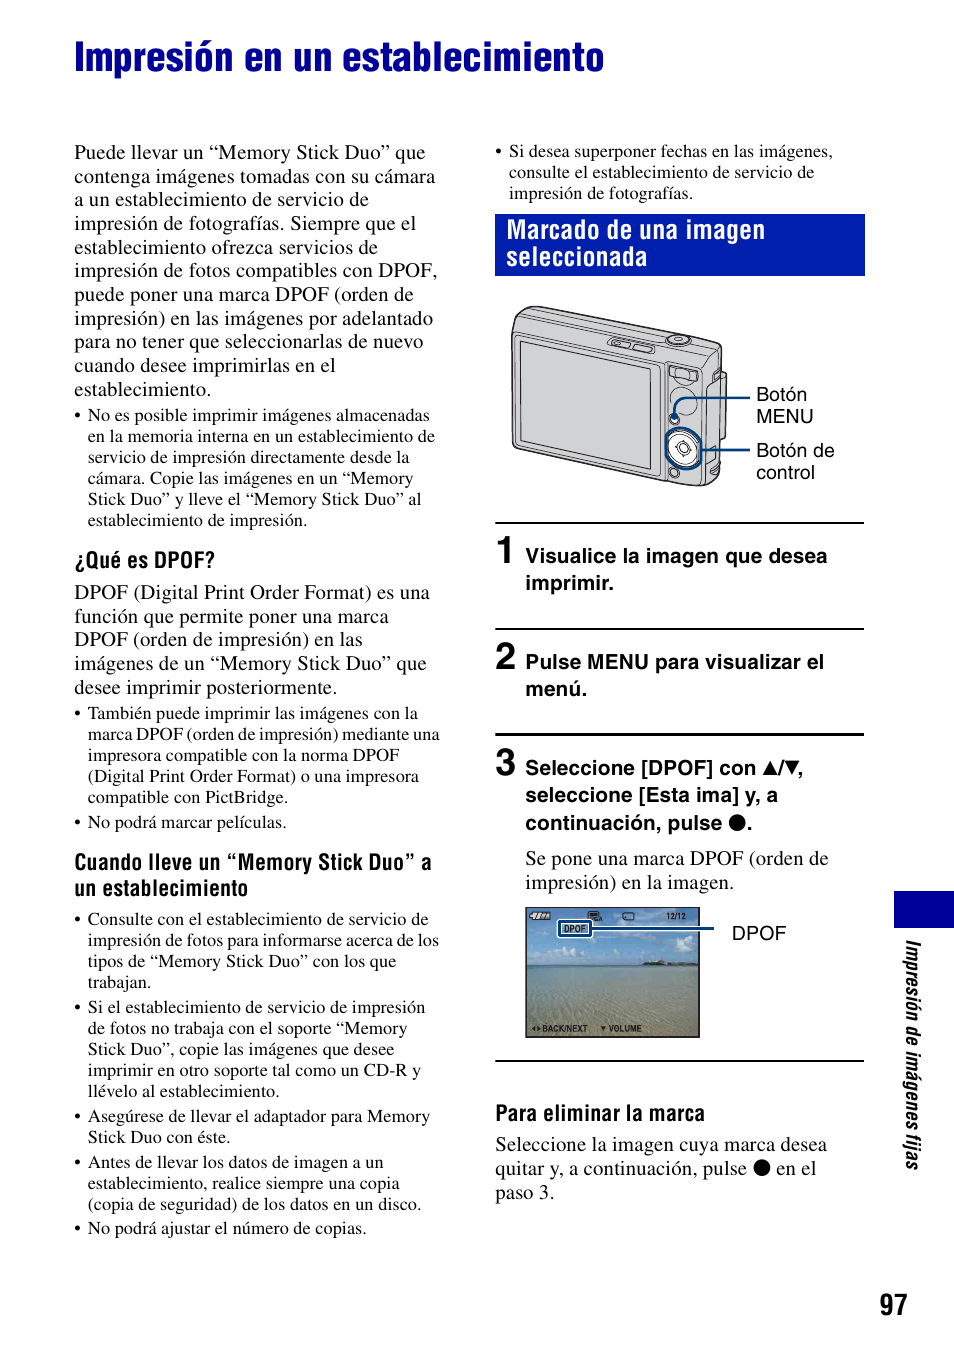 Impresión en un establecimiento, Marcado de una imagen seleccionada | Sony DSC-T100 Manual del usuario | Página 97 / 123